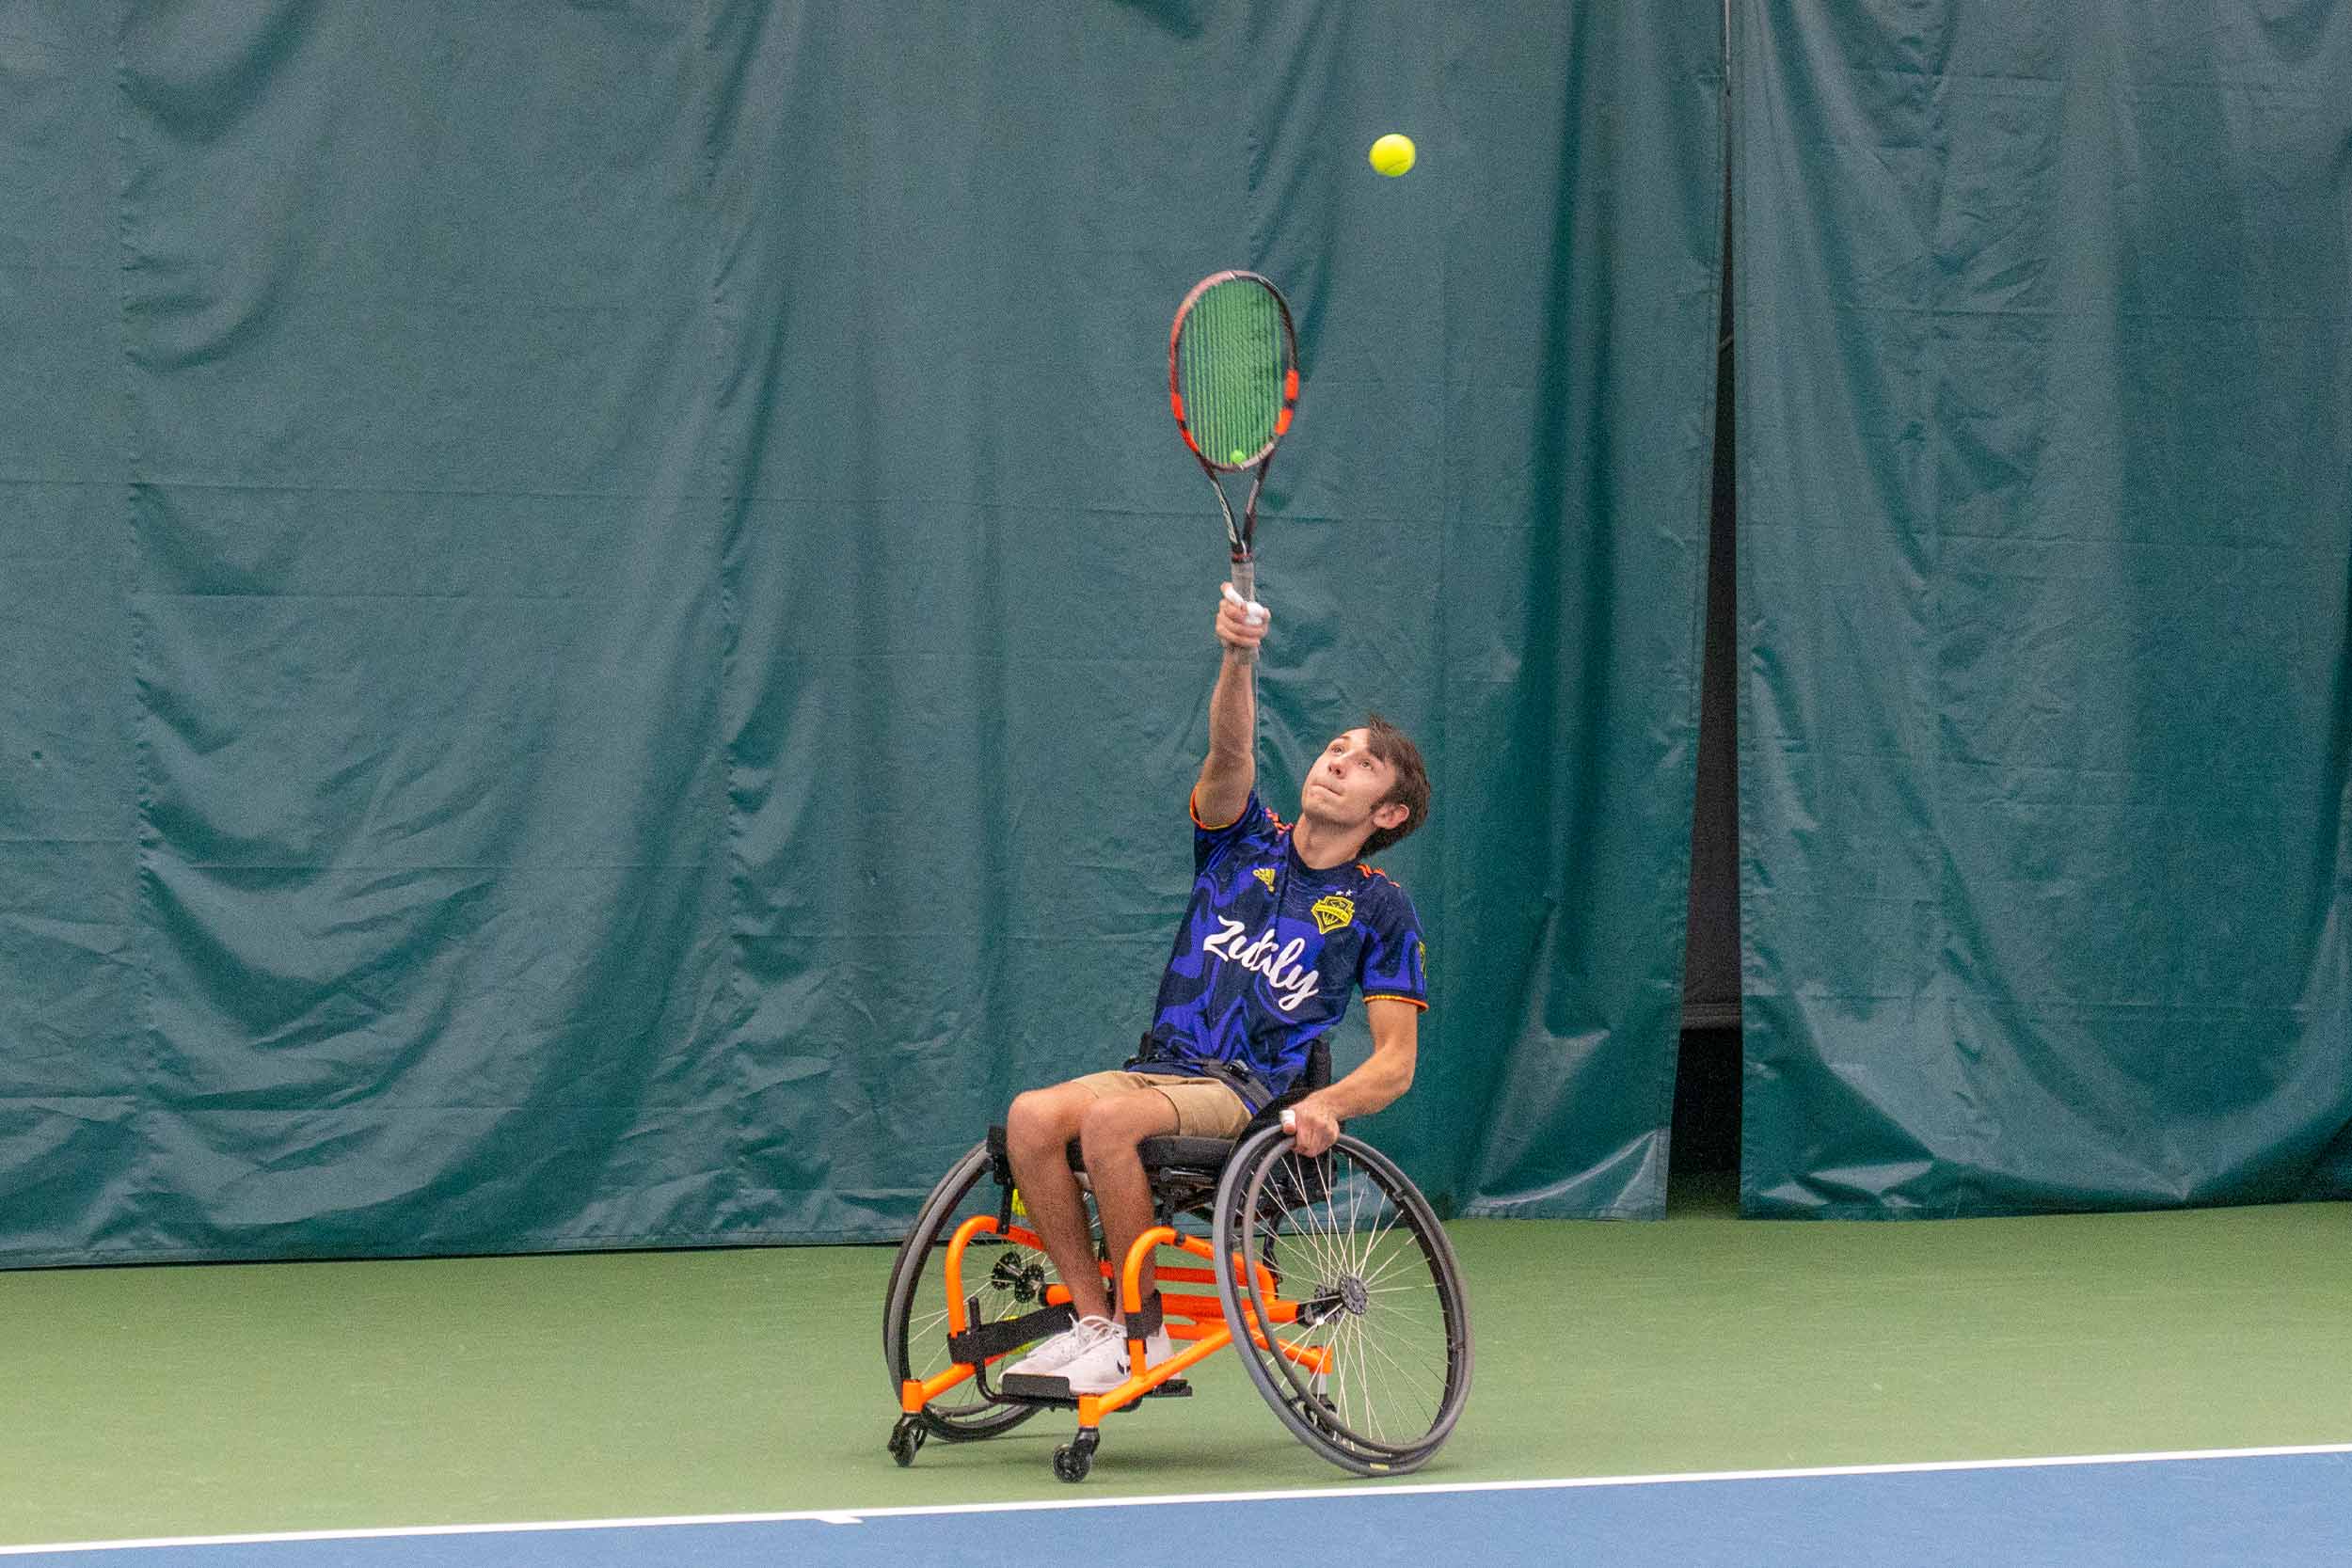 Man in wheelchair serves tennis ball.